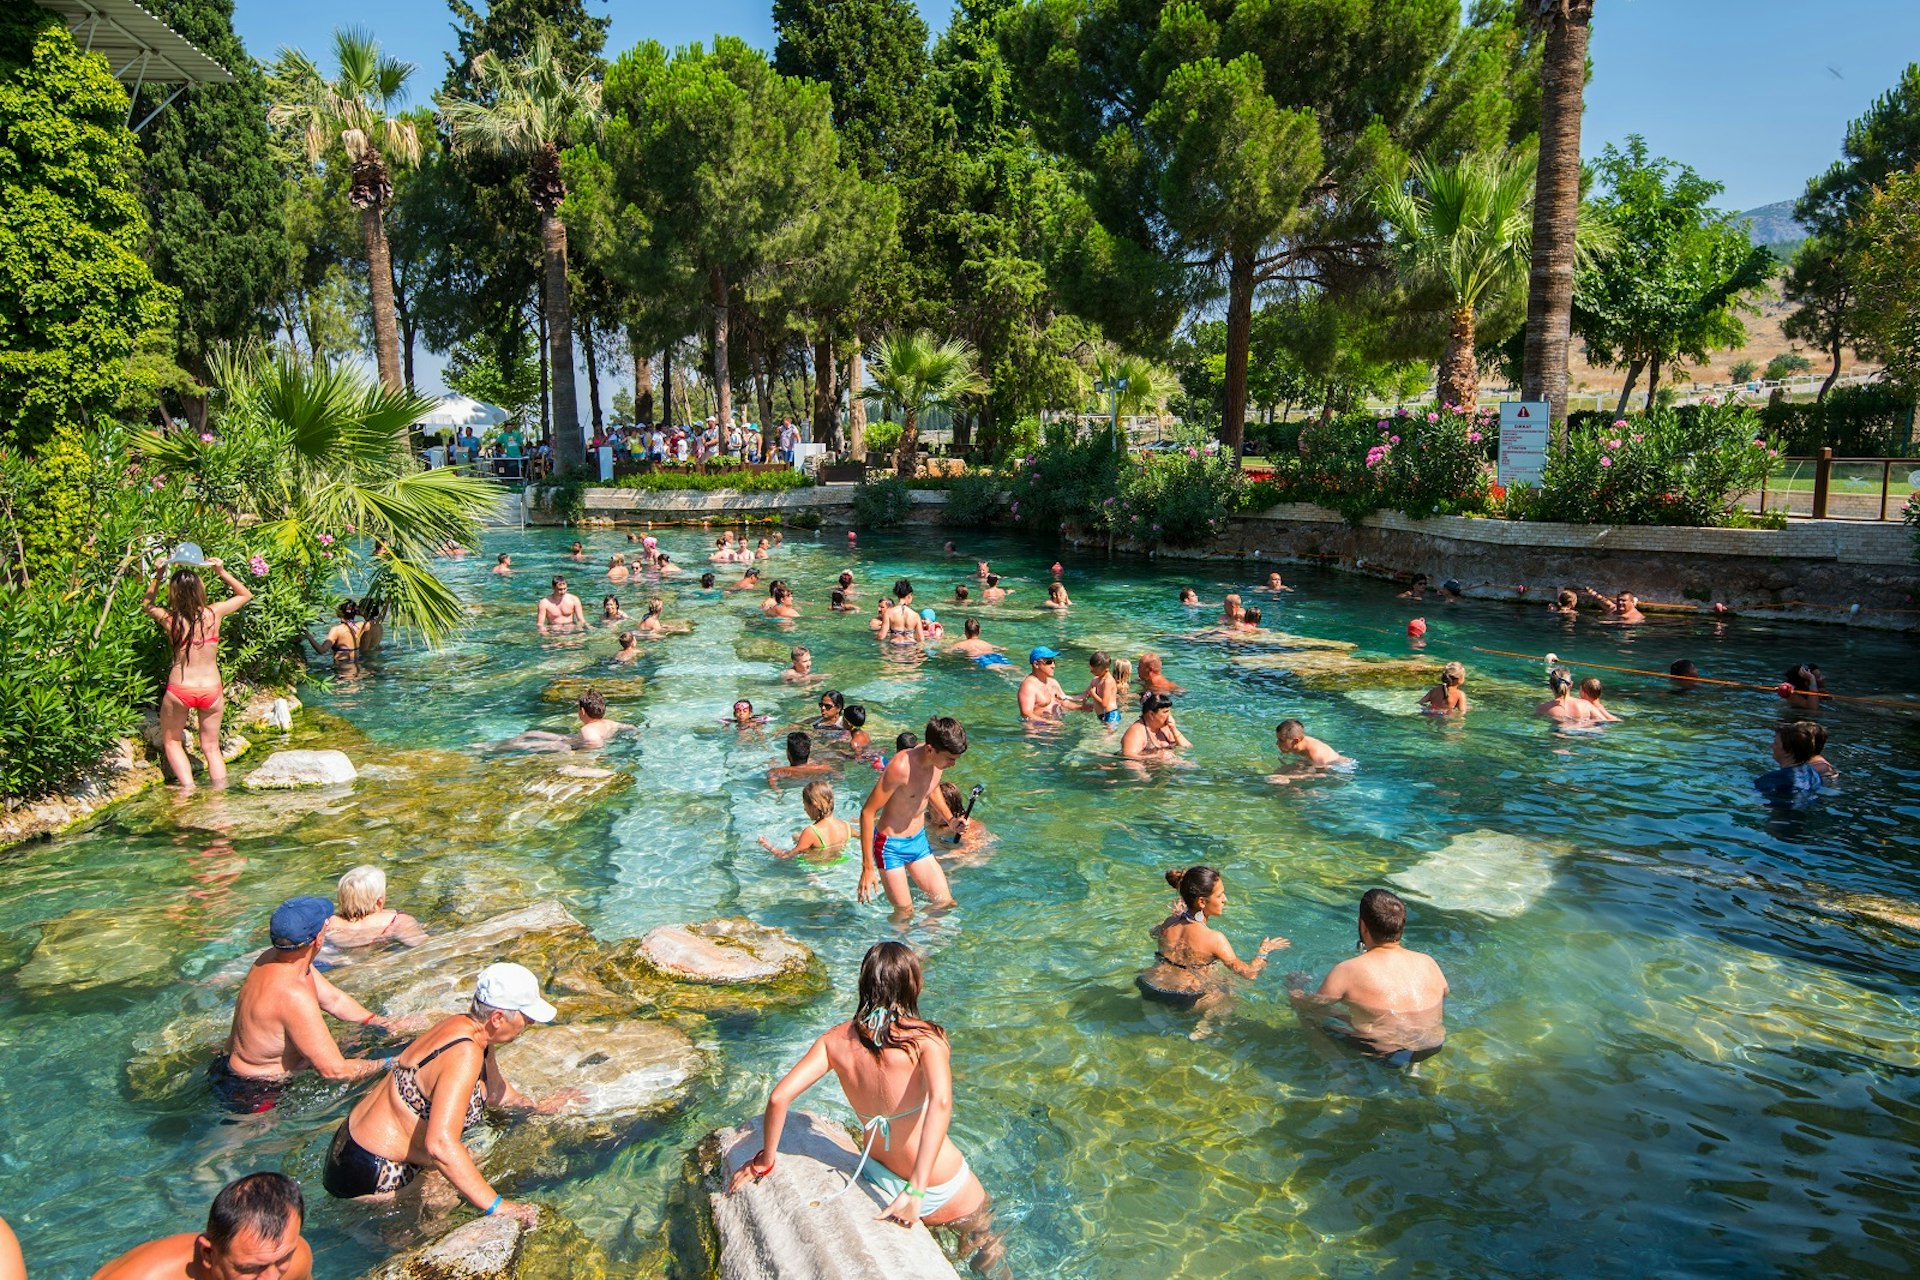 Cleopatra pool at Pamukkale, Turkey